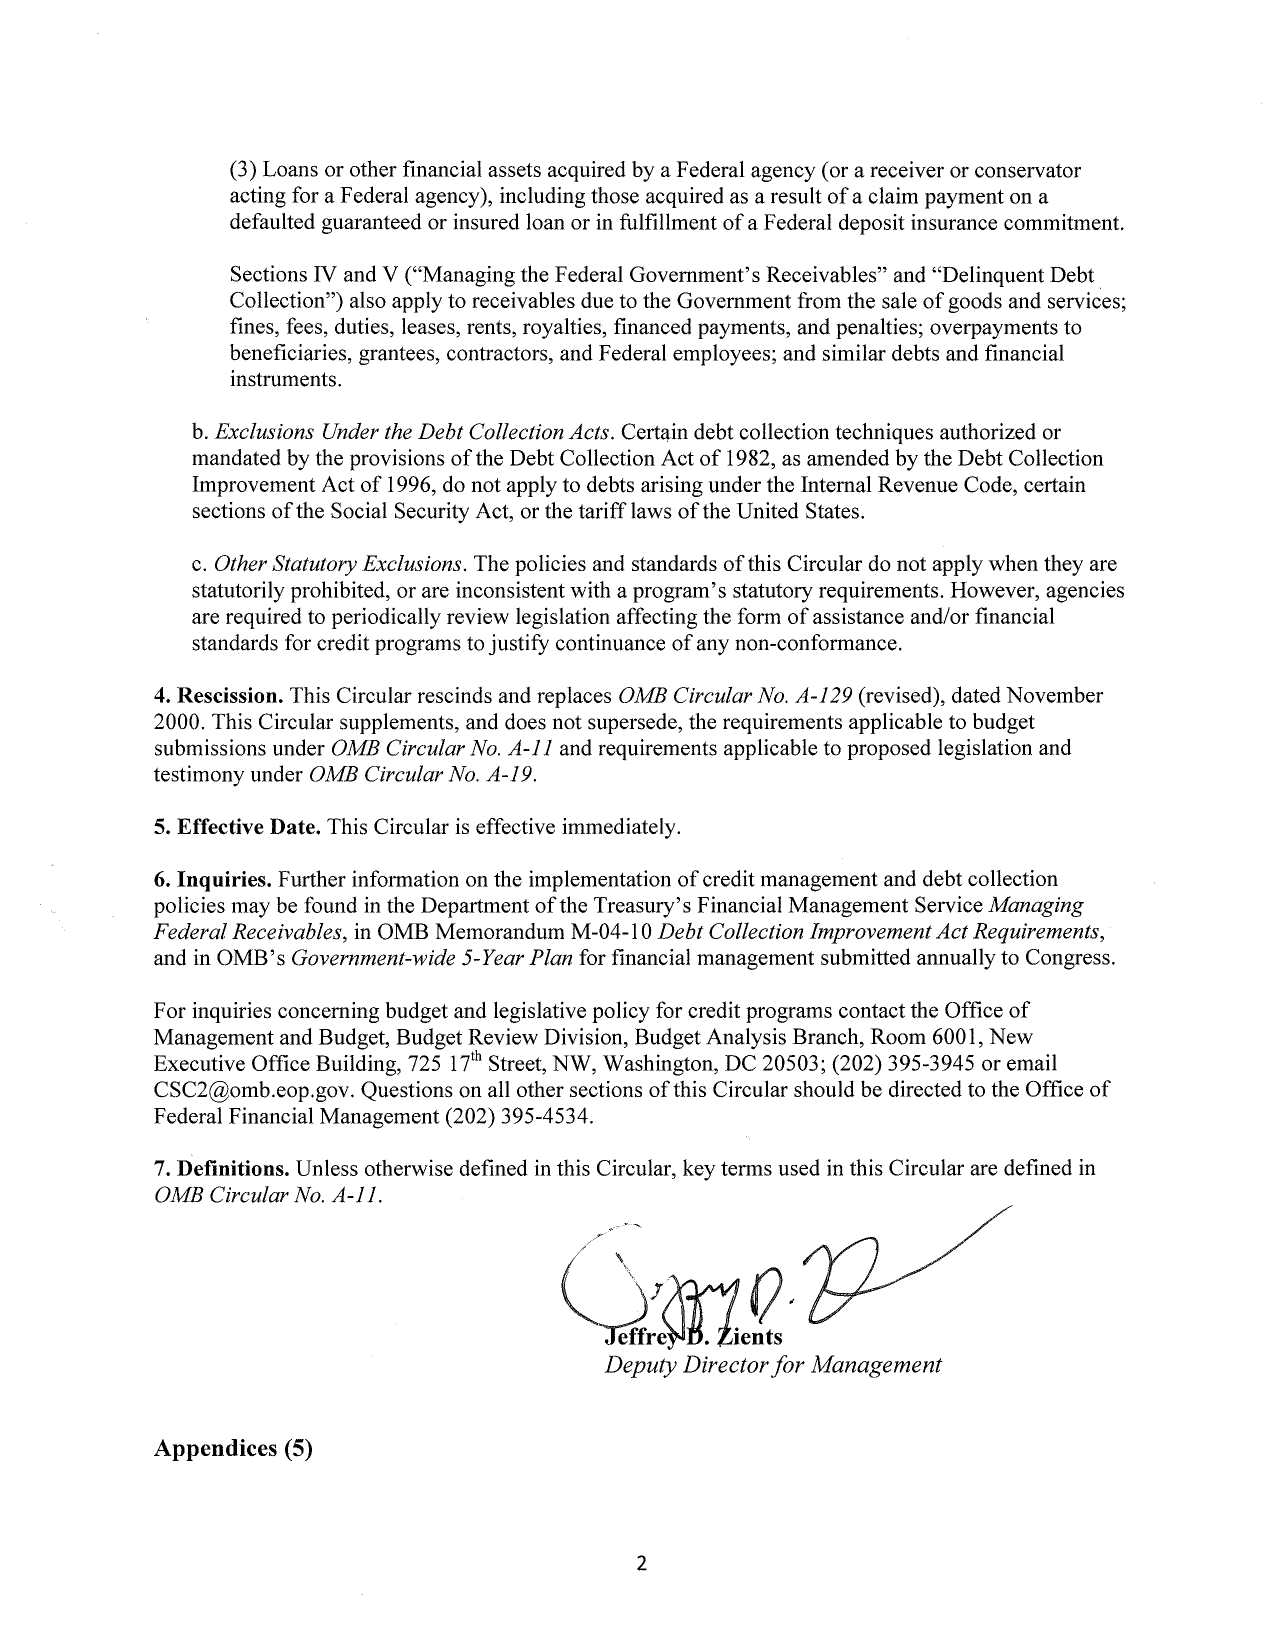 Letter Or Memo Of Transmittal from obamawhitehouse.archives.gov